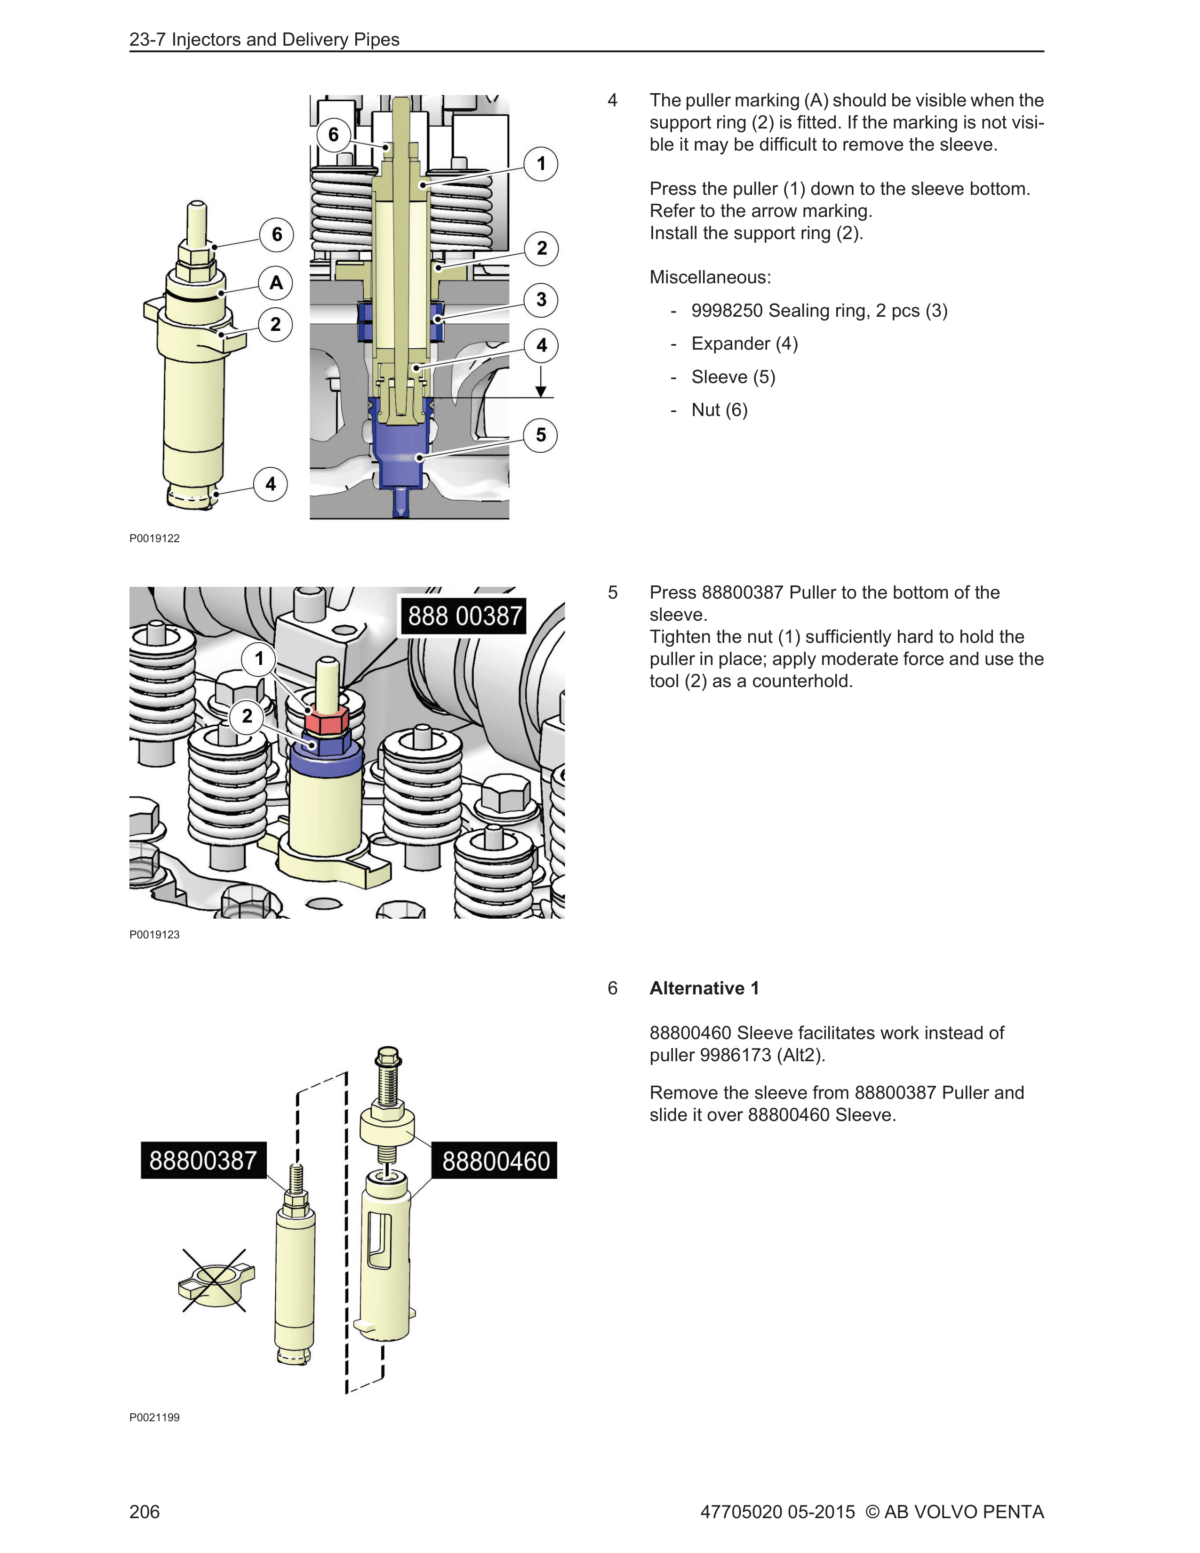 Volvo Penta Marine & Industrial Engine (TAD1140-1-2VE, TAD1150-1-2VE, TAD1170-1-2VE) Workshop Manual